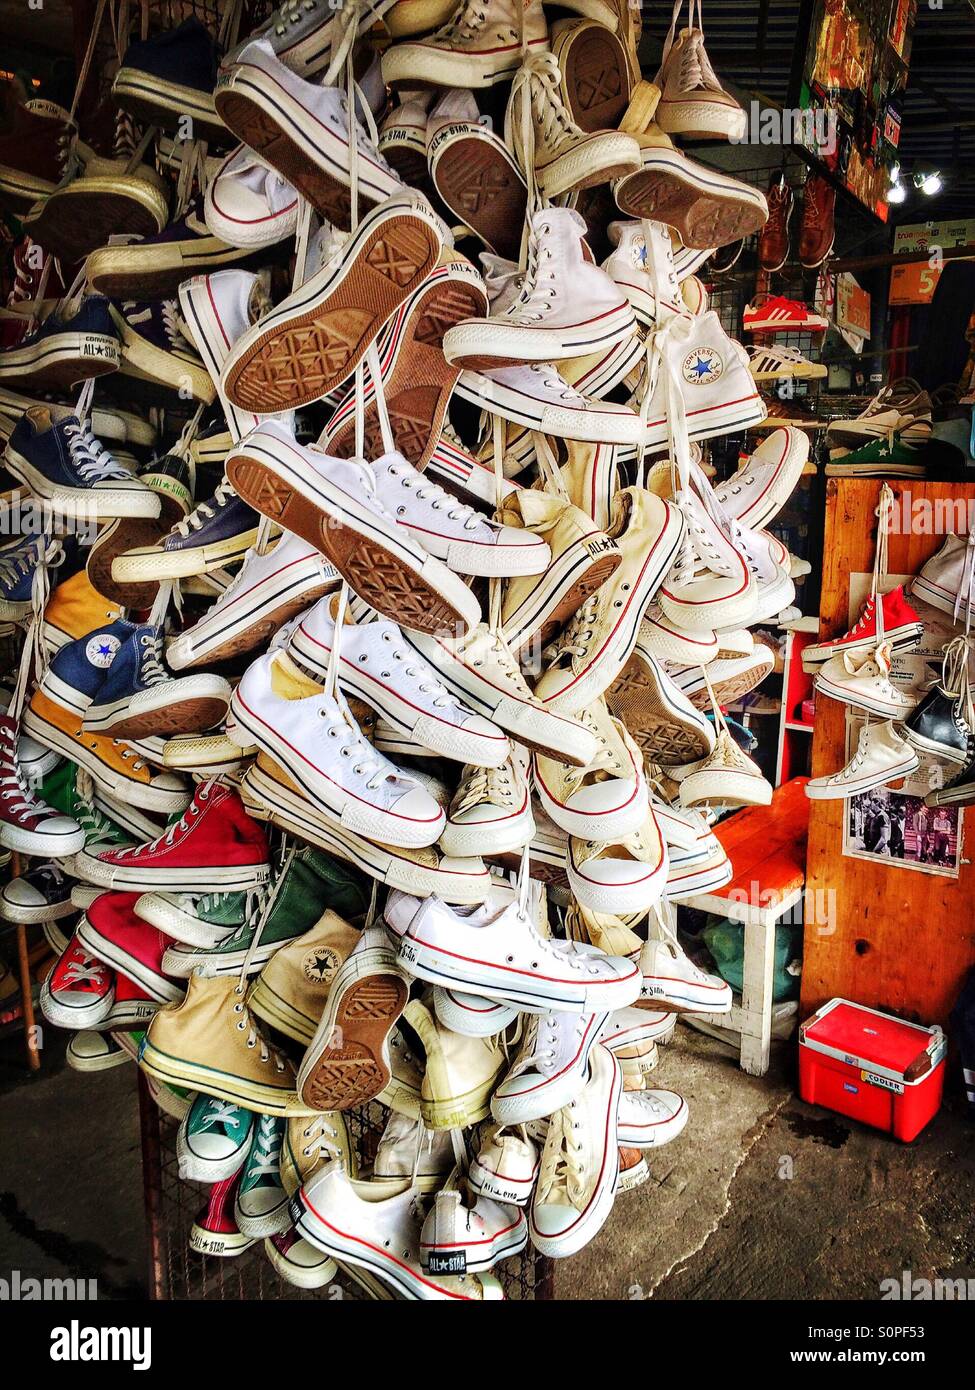 Magasin de chaussures au marché de Chatuchak, Bangkok, Thailand Photo Stock  - Alamy